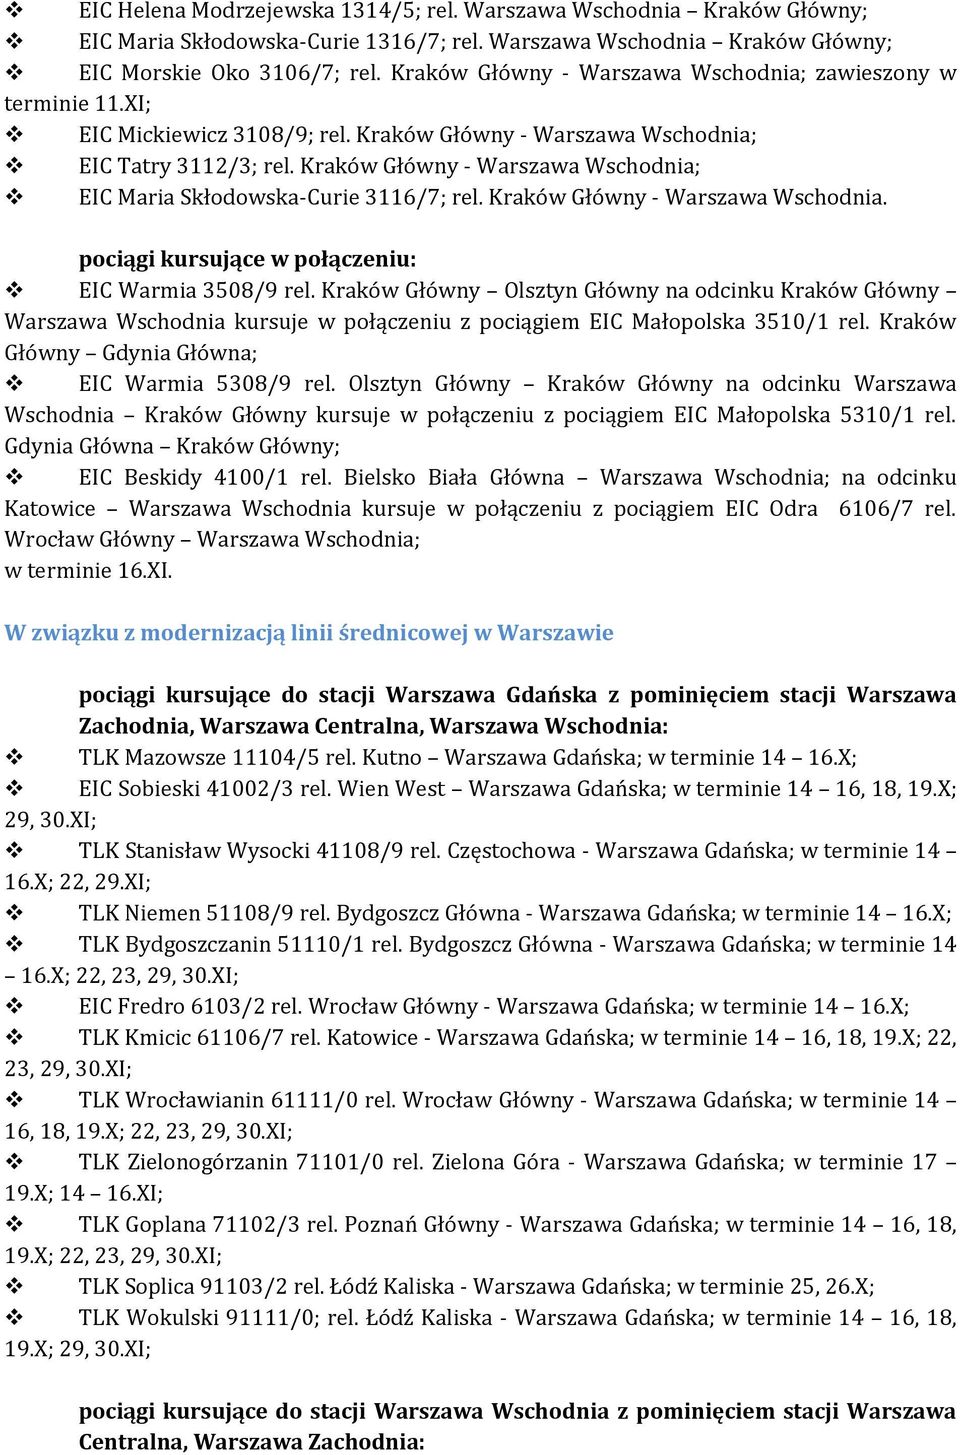 Kraków Główny - Warszawa Wschodnia; EIC Maria Skłodowska-Curie 3116/7; rel. Kraków Główny - Warszawa Wschodnia. pociągi kursujące w połączeniu: EIC Warmia 3508/9 rel.